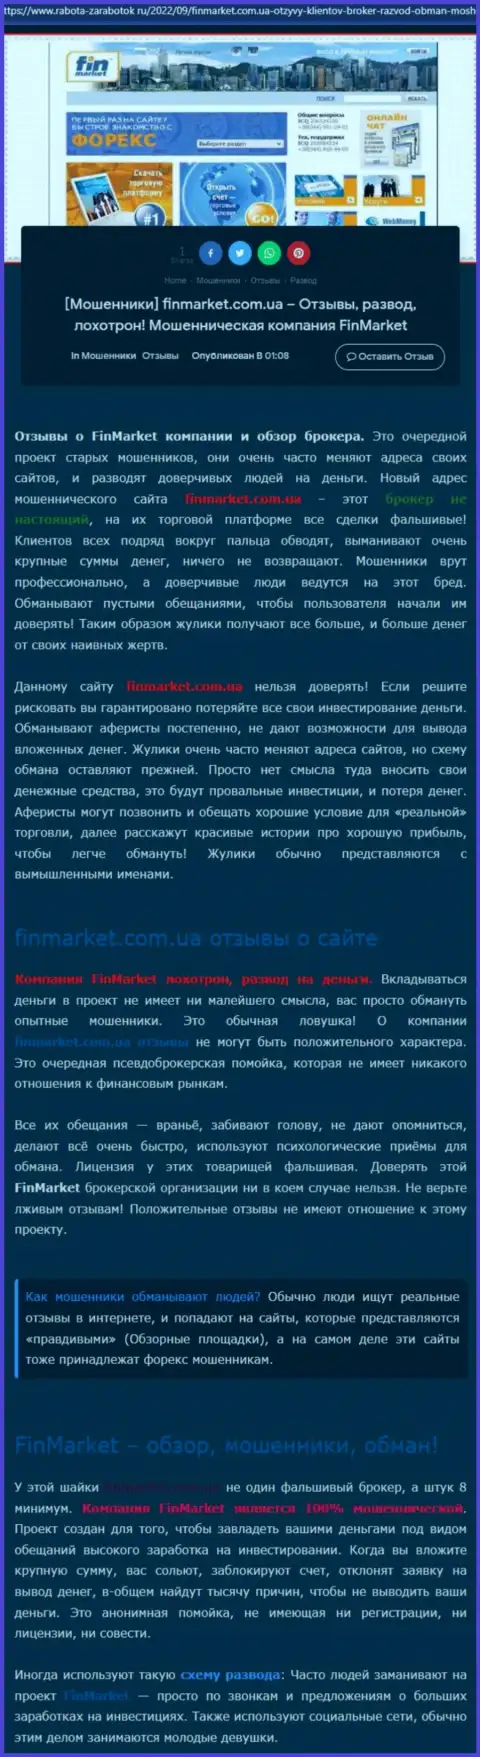 Разбор действий конторы ООО ФИНМАРКЕТ - лишают денег жестко (обзор)